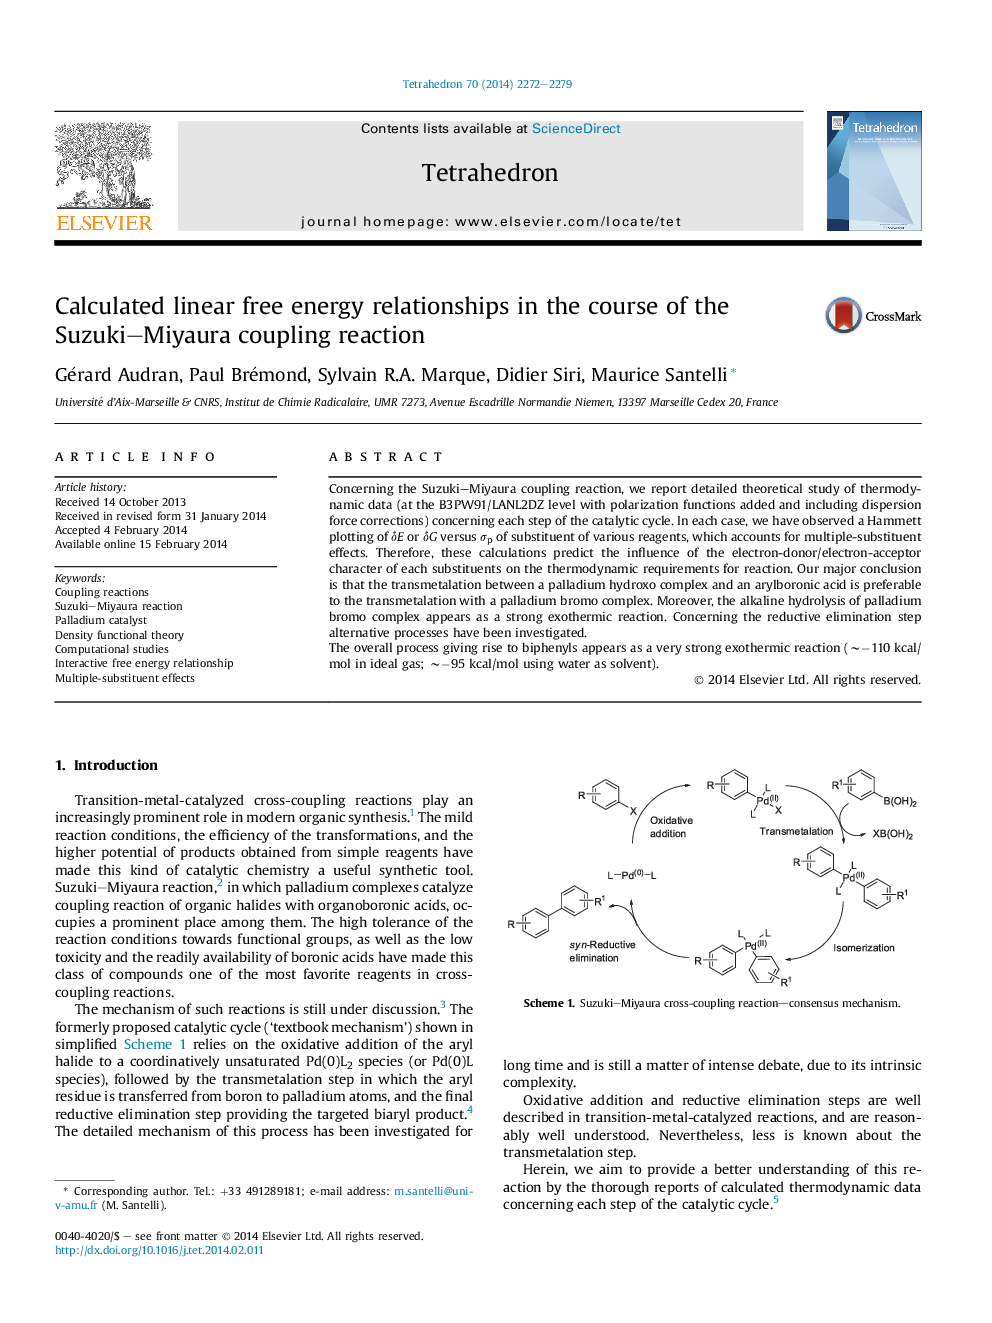 روابط انرژی آزاد خطی محاسبه شده در جریان واکنش کوپوزیتی سوزوکی میایورا 